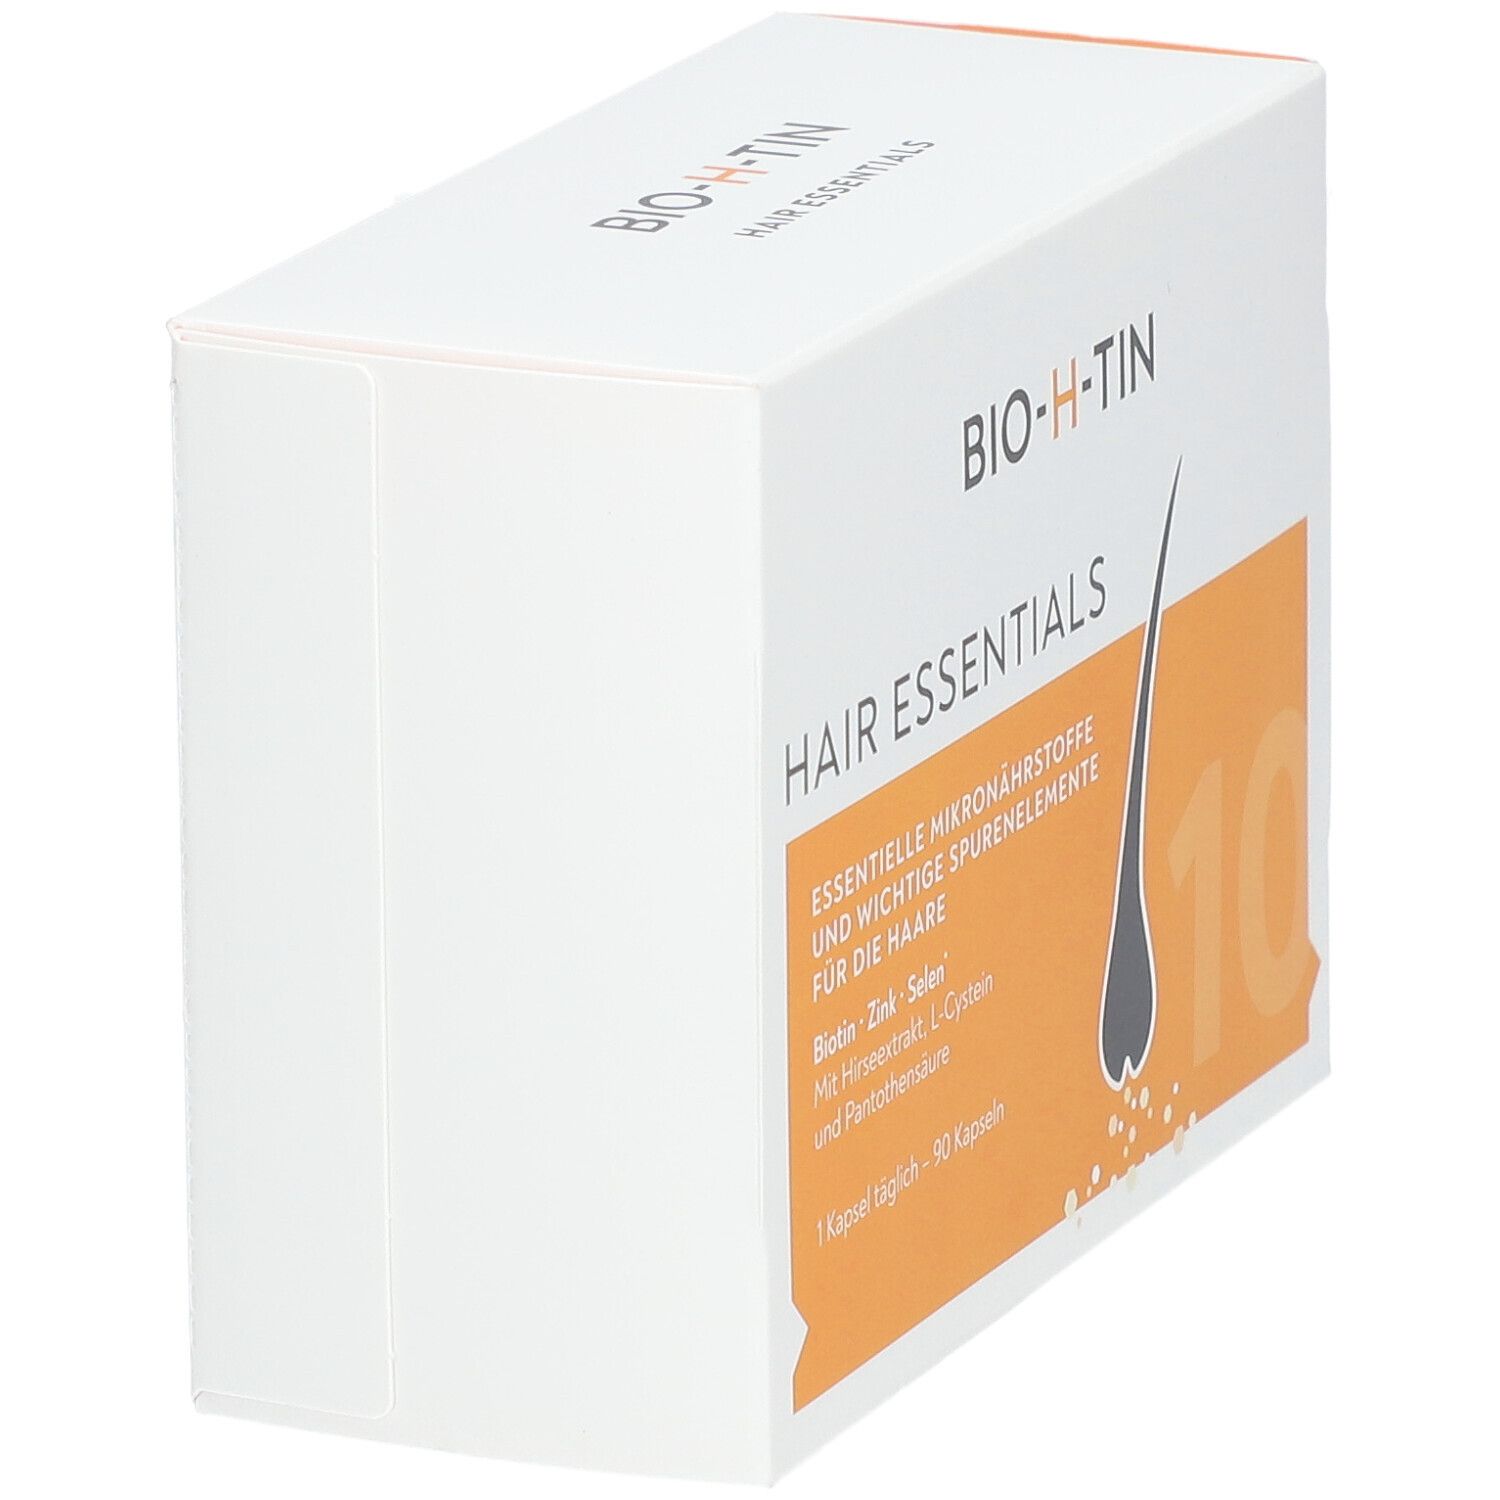 BIO-H-TIN® Hair Essentials​